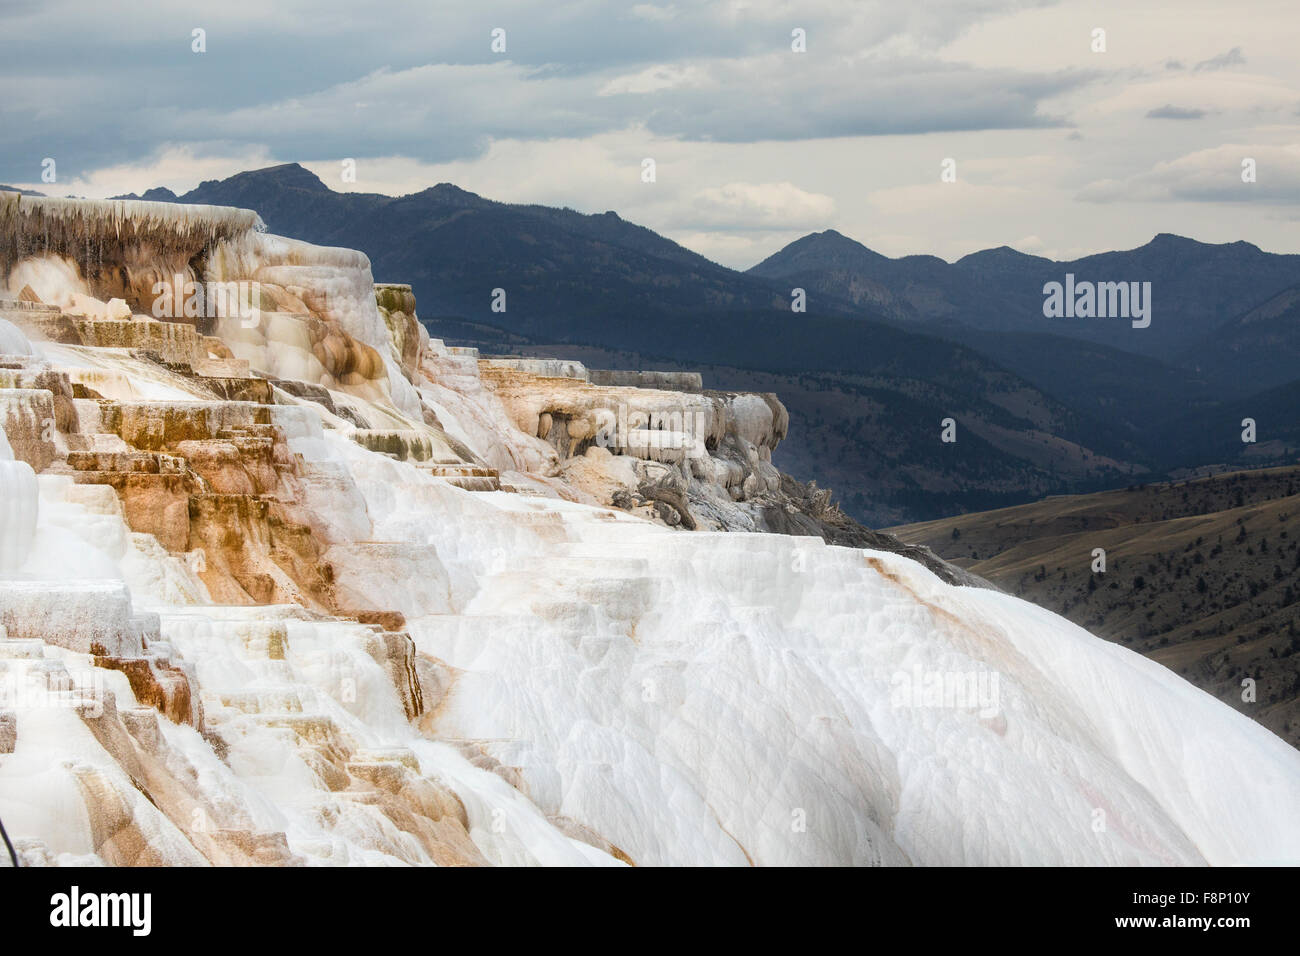 Le flux géothermique de chaud, l'eau riche en carbonate, formulaires, en cascade de terrasses en travertin orange foncé, avec des montagnes en arrière-plan Banque D'Images